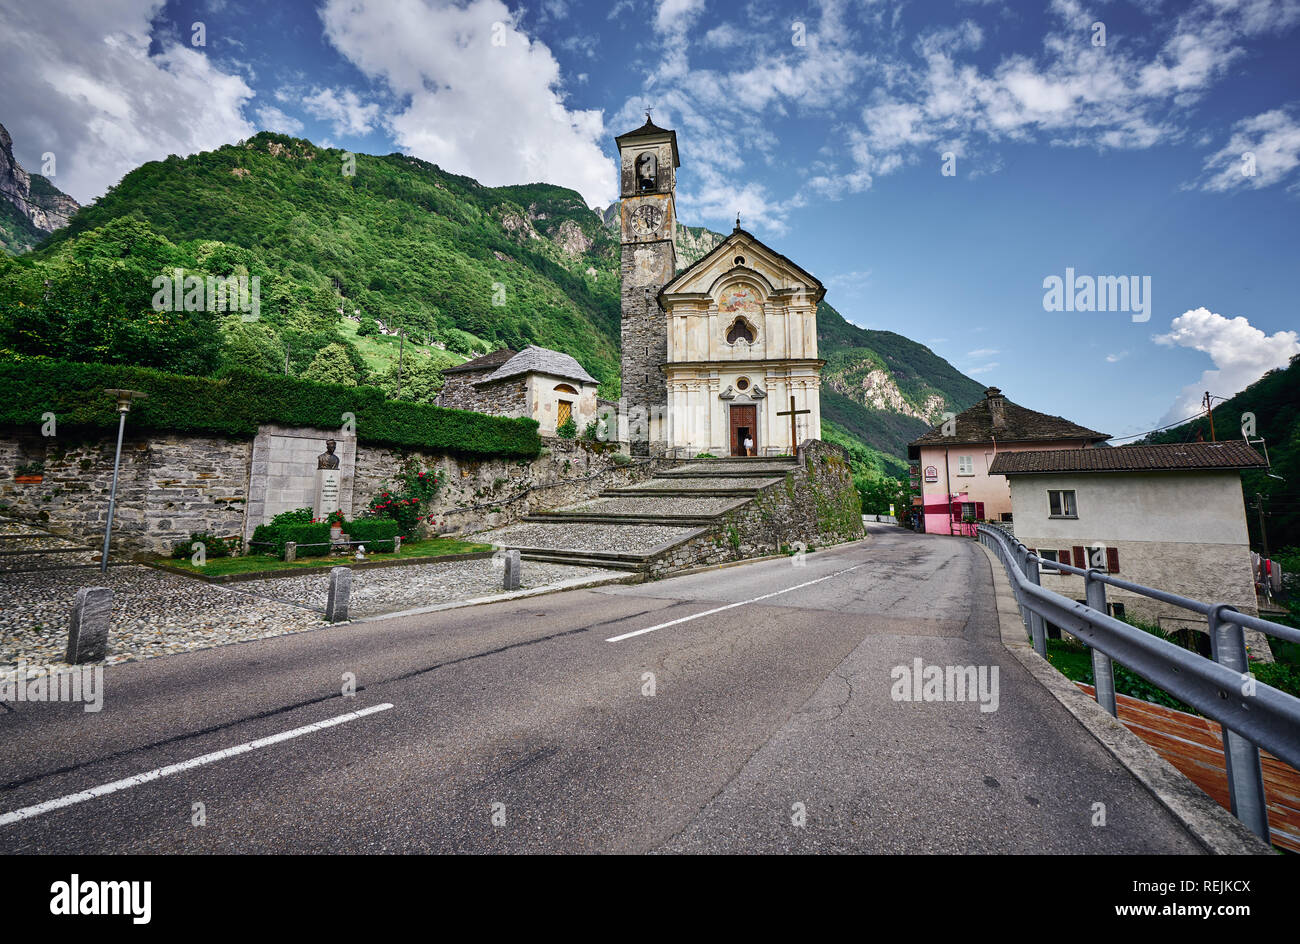 Panorama des romantischen Dorfes Lavertezzo, Verzasca Tal, Tessin, Schweiz. Kirche, Fluss, grüne Bäume und blauer Himmel im Juni, im Sommer. Stockfoto